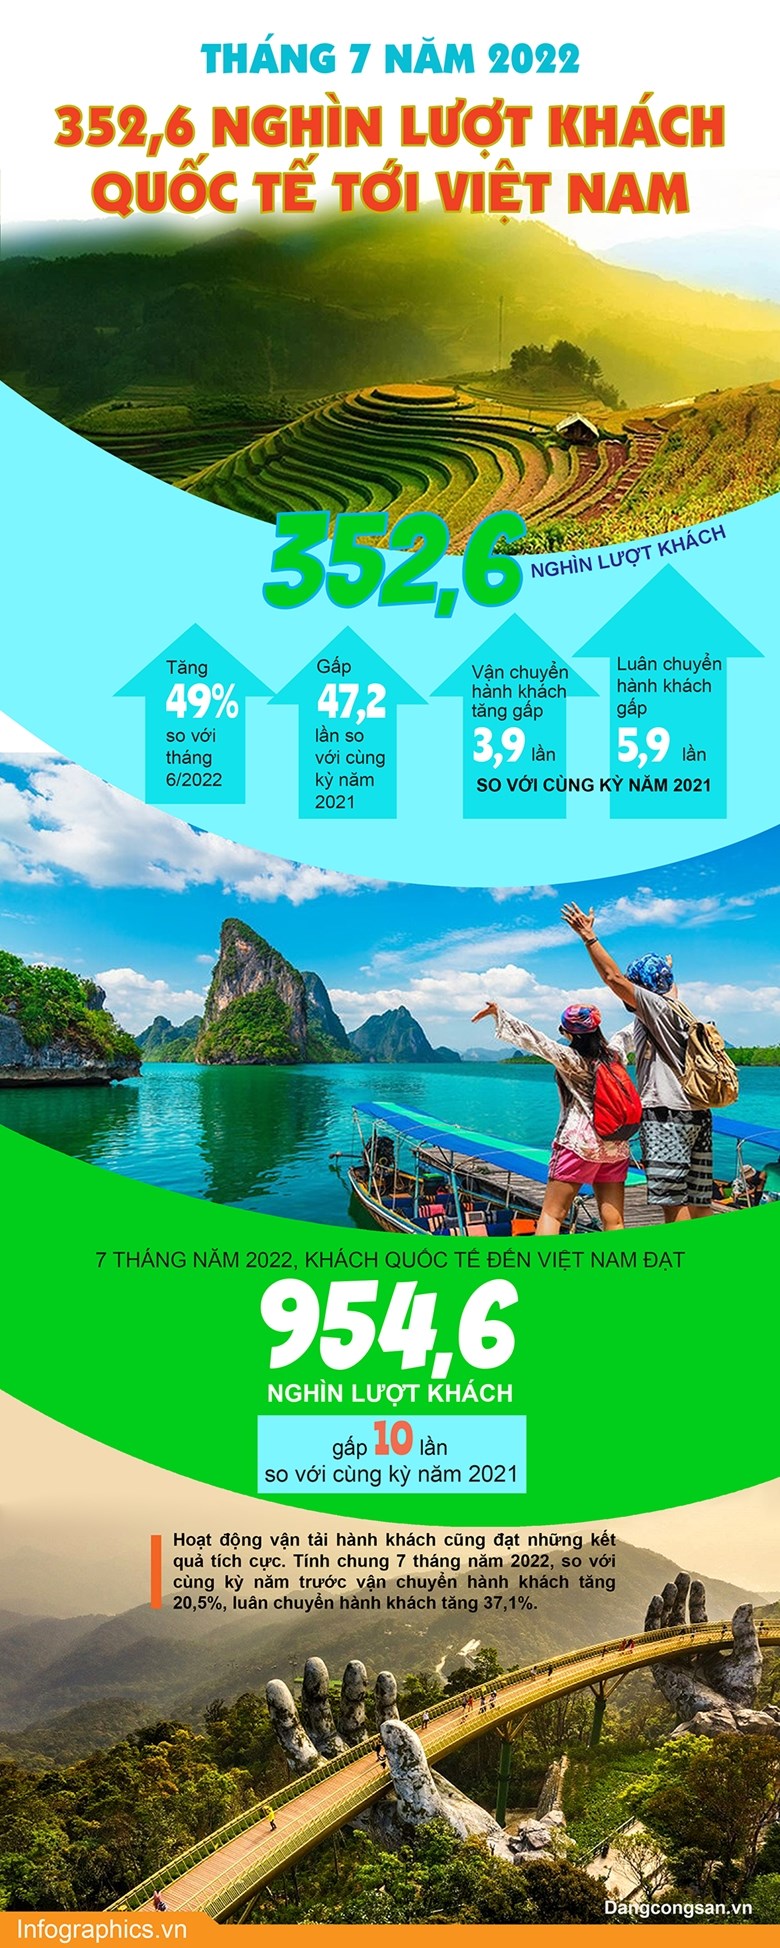 Tháng 7/2022 có 352,6 nghìn lượt khách quốc tế tới Việt Nam - Ảnh 1